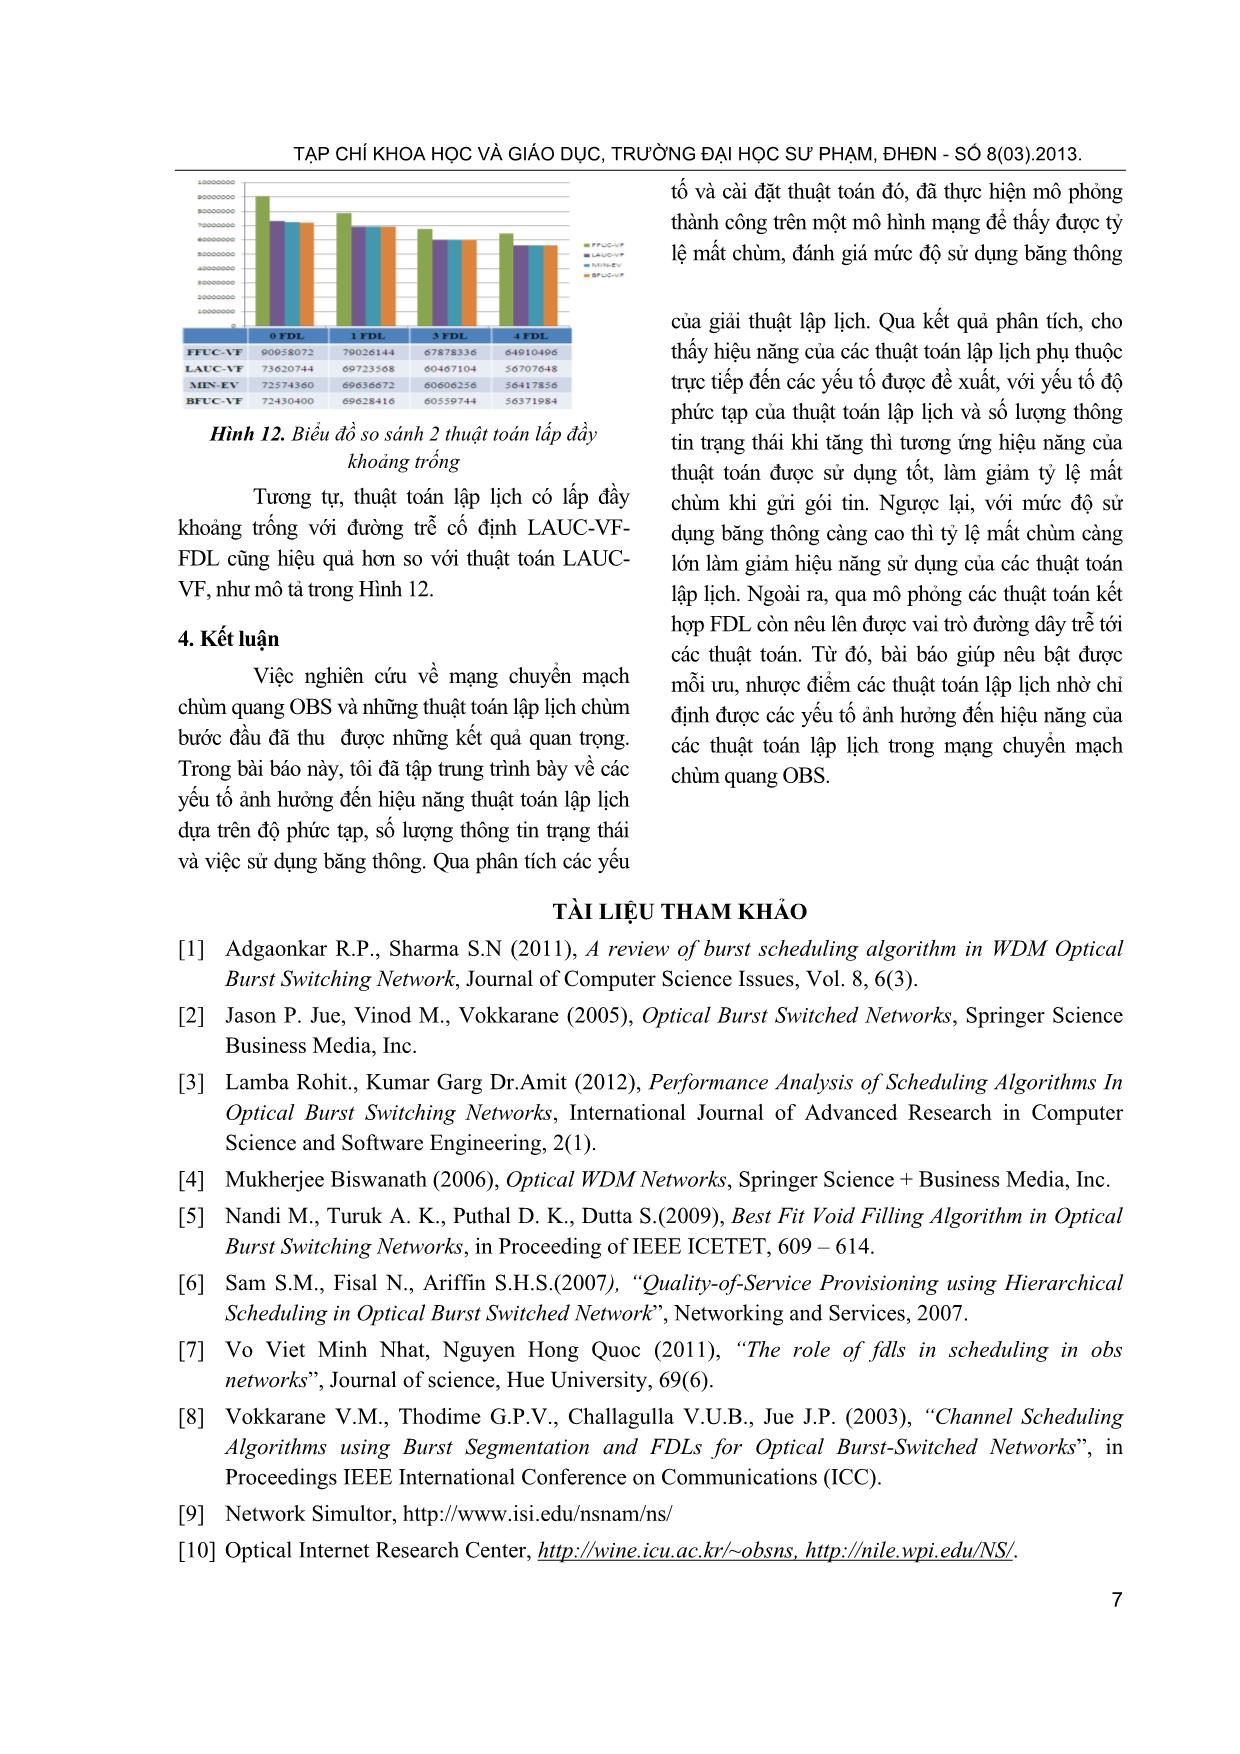 Các yếu tố ảnh hưởng đến hiệu năng thuật toán lập lịch trên mạng chuyển mạch chùm quang OBS trang 7